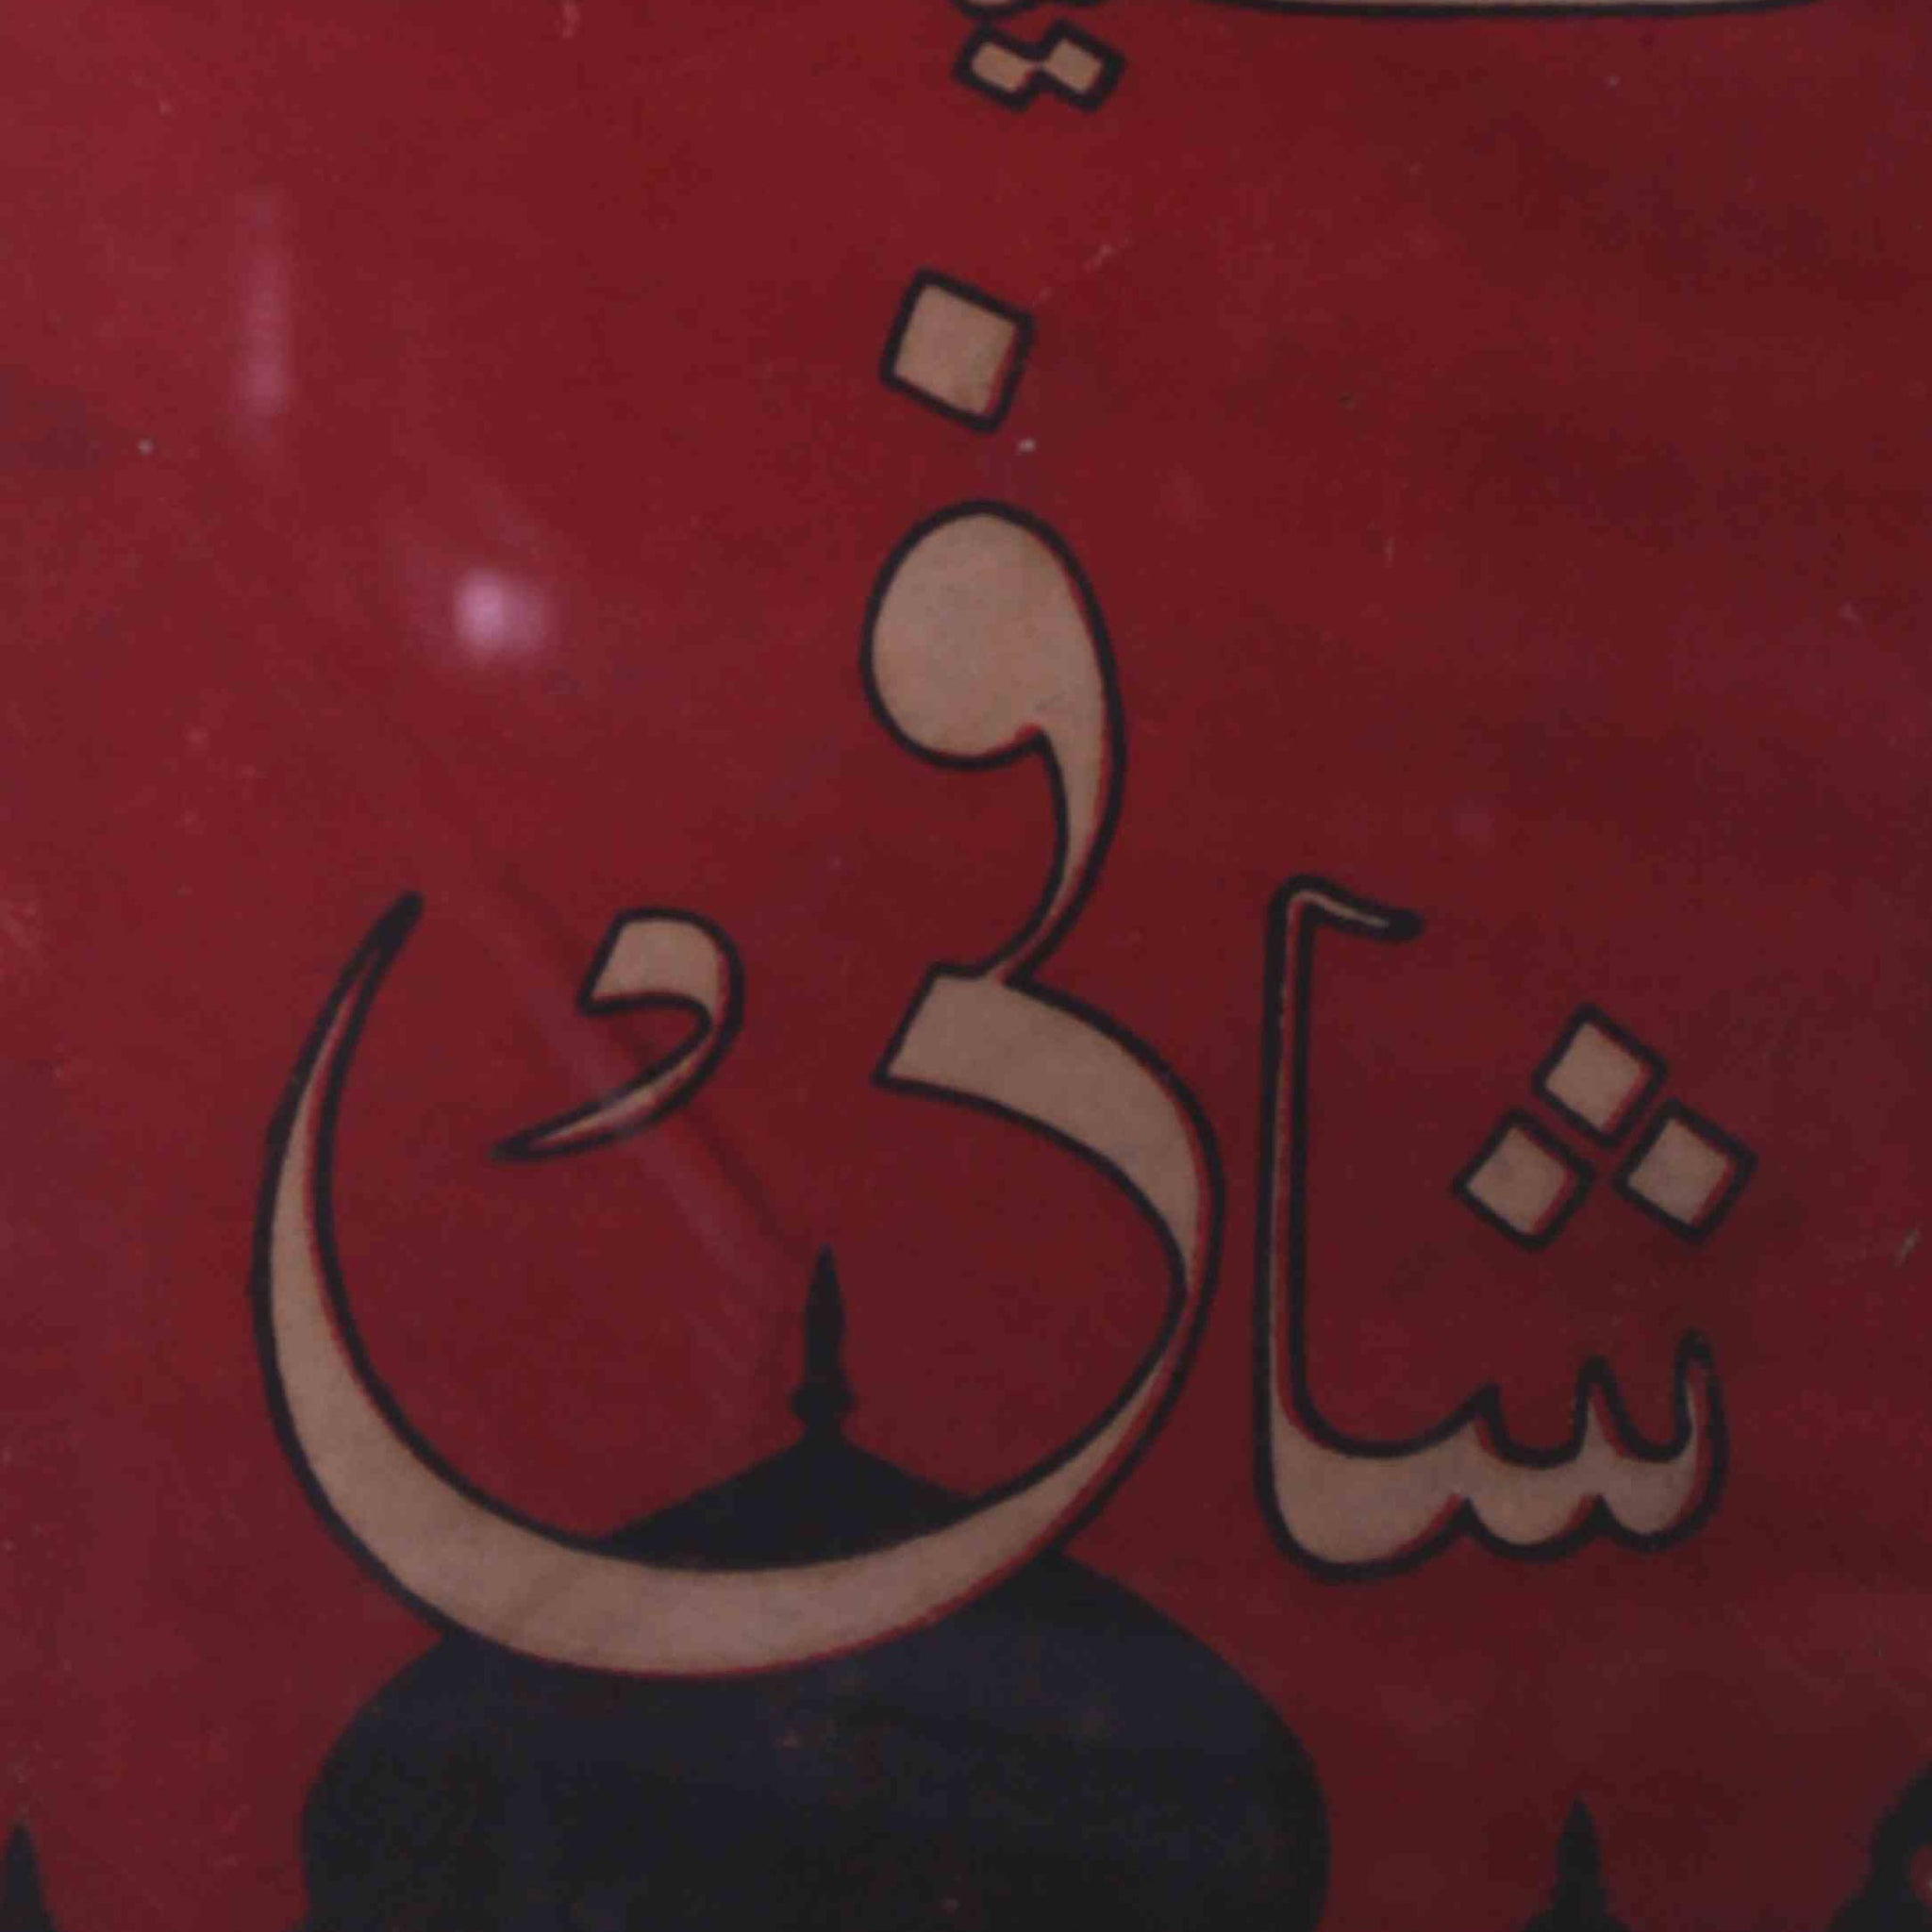 Kulliyat-e-Shafi